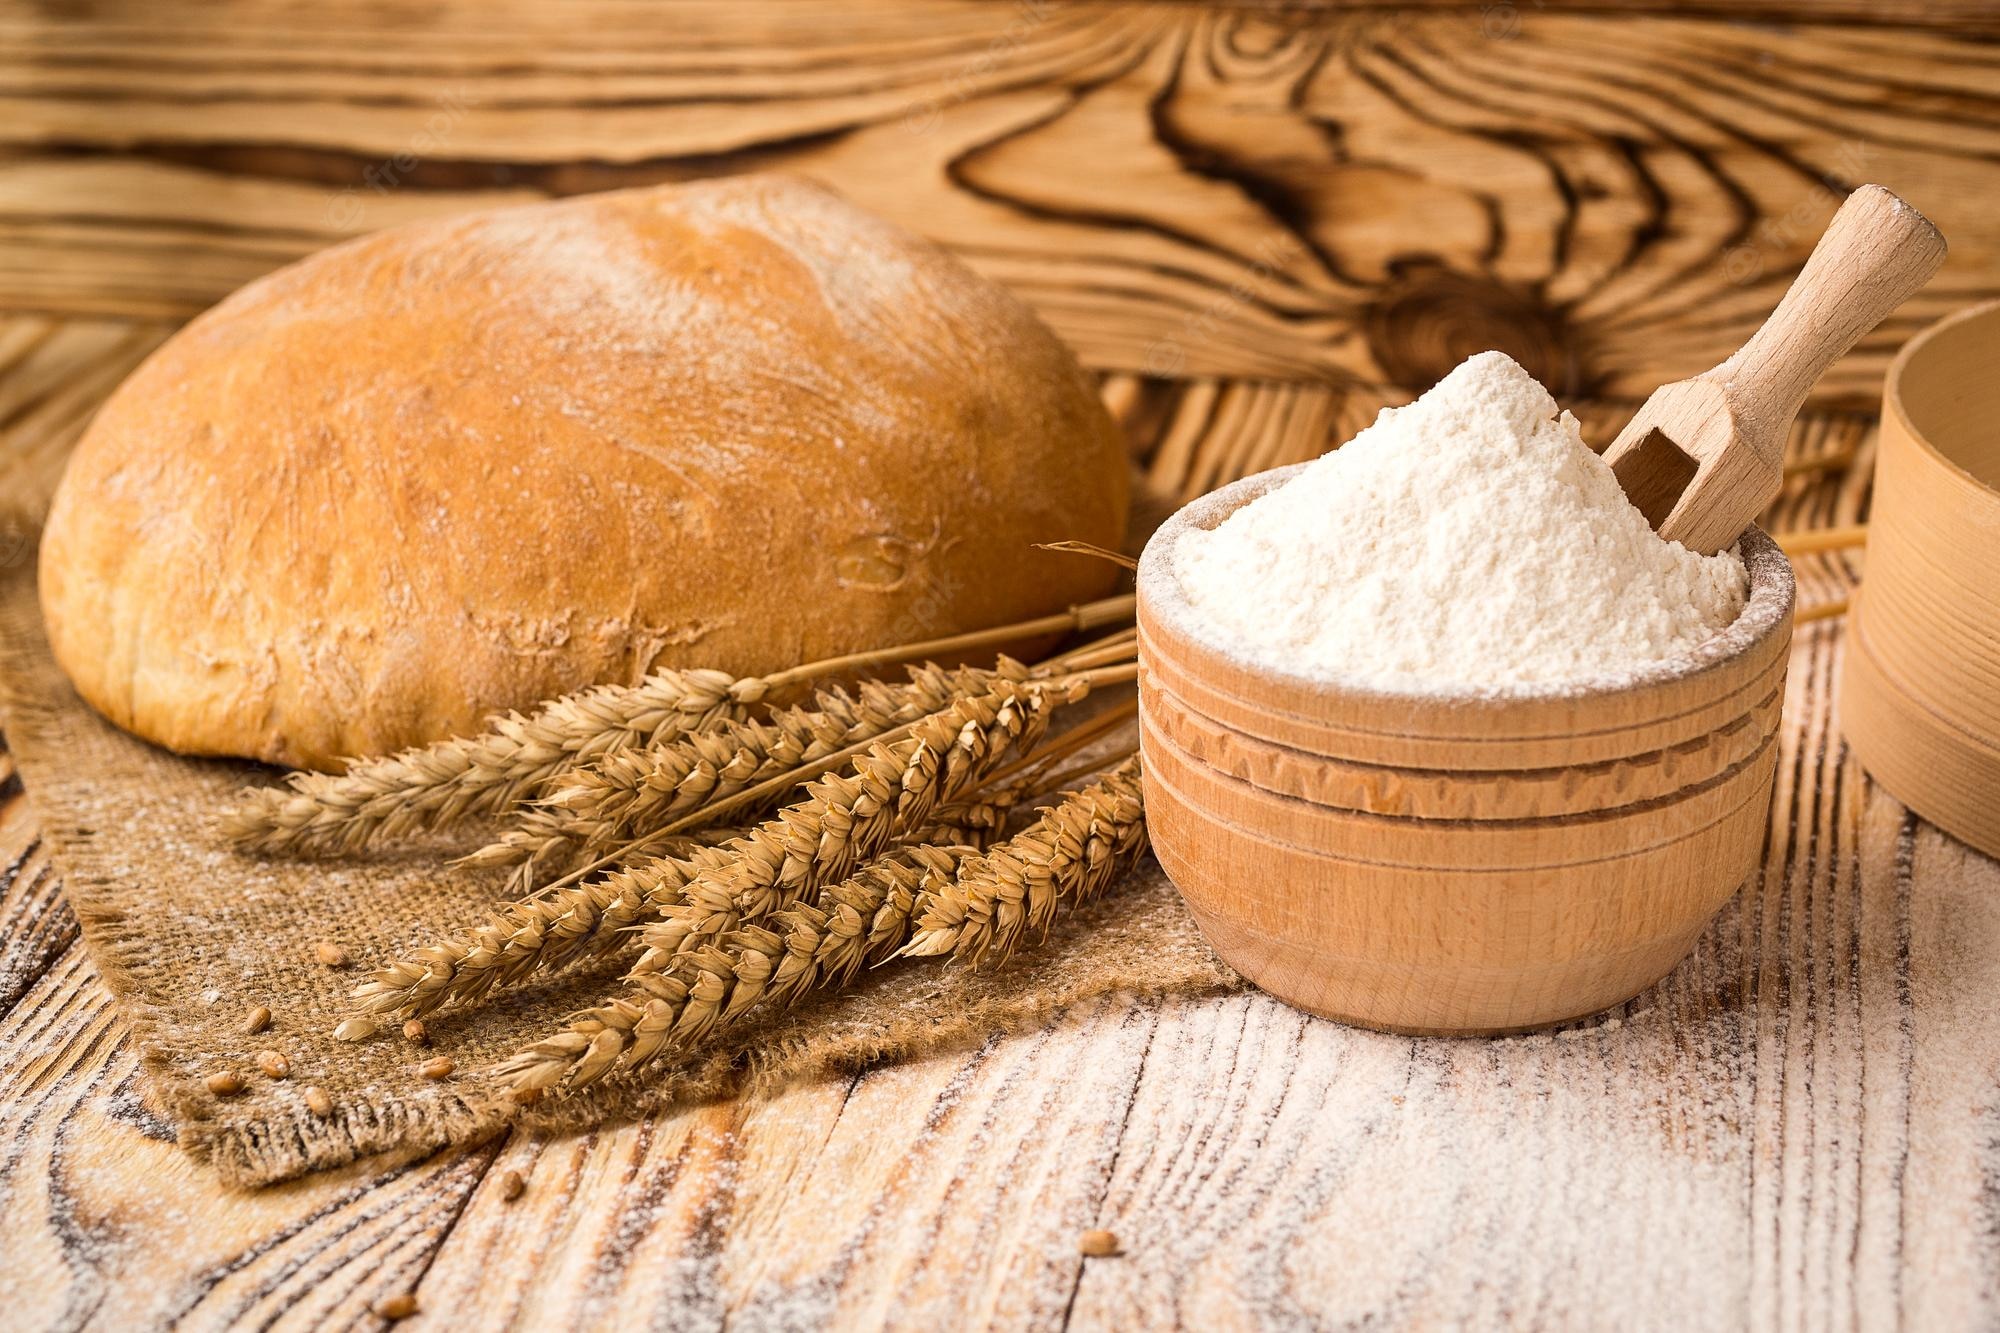 Composition wheat flour Image. Free Vectors, & PSD